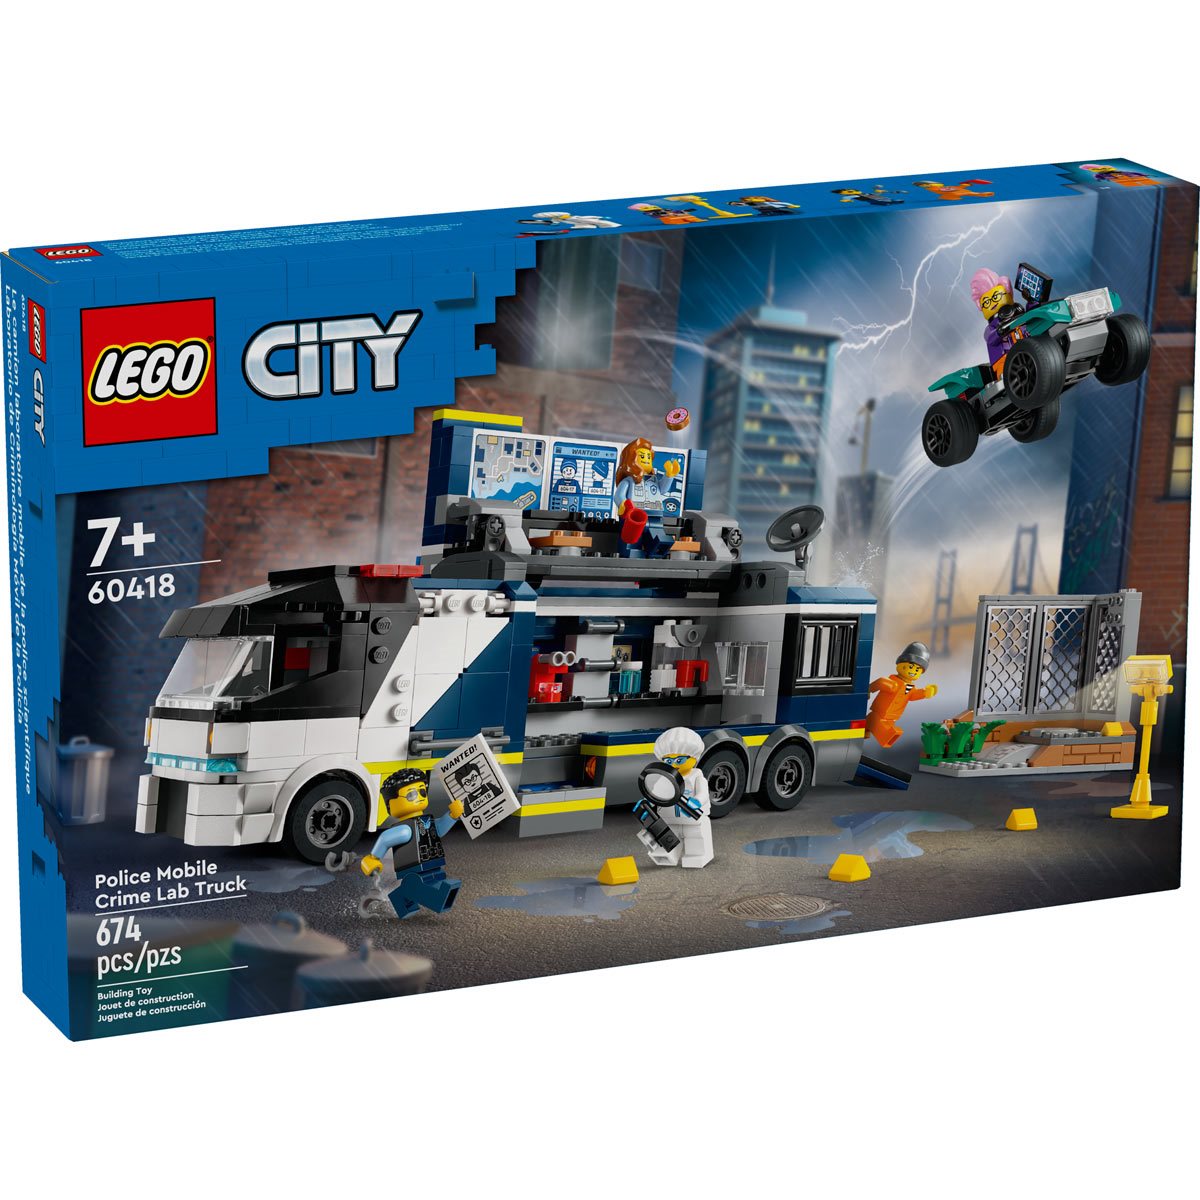 Lego Construction Site  Lego construction, Lego truck, Lego city